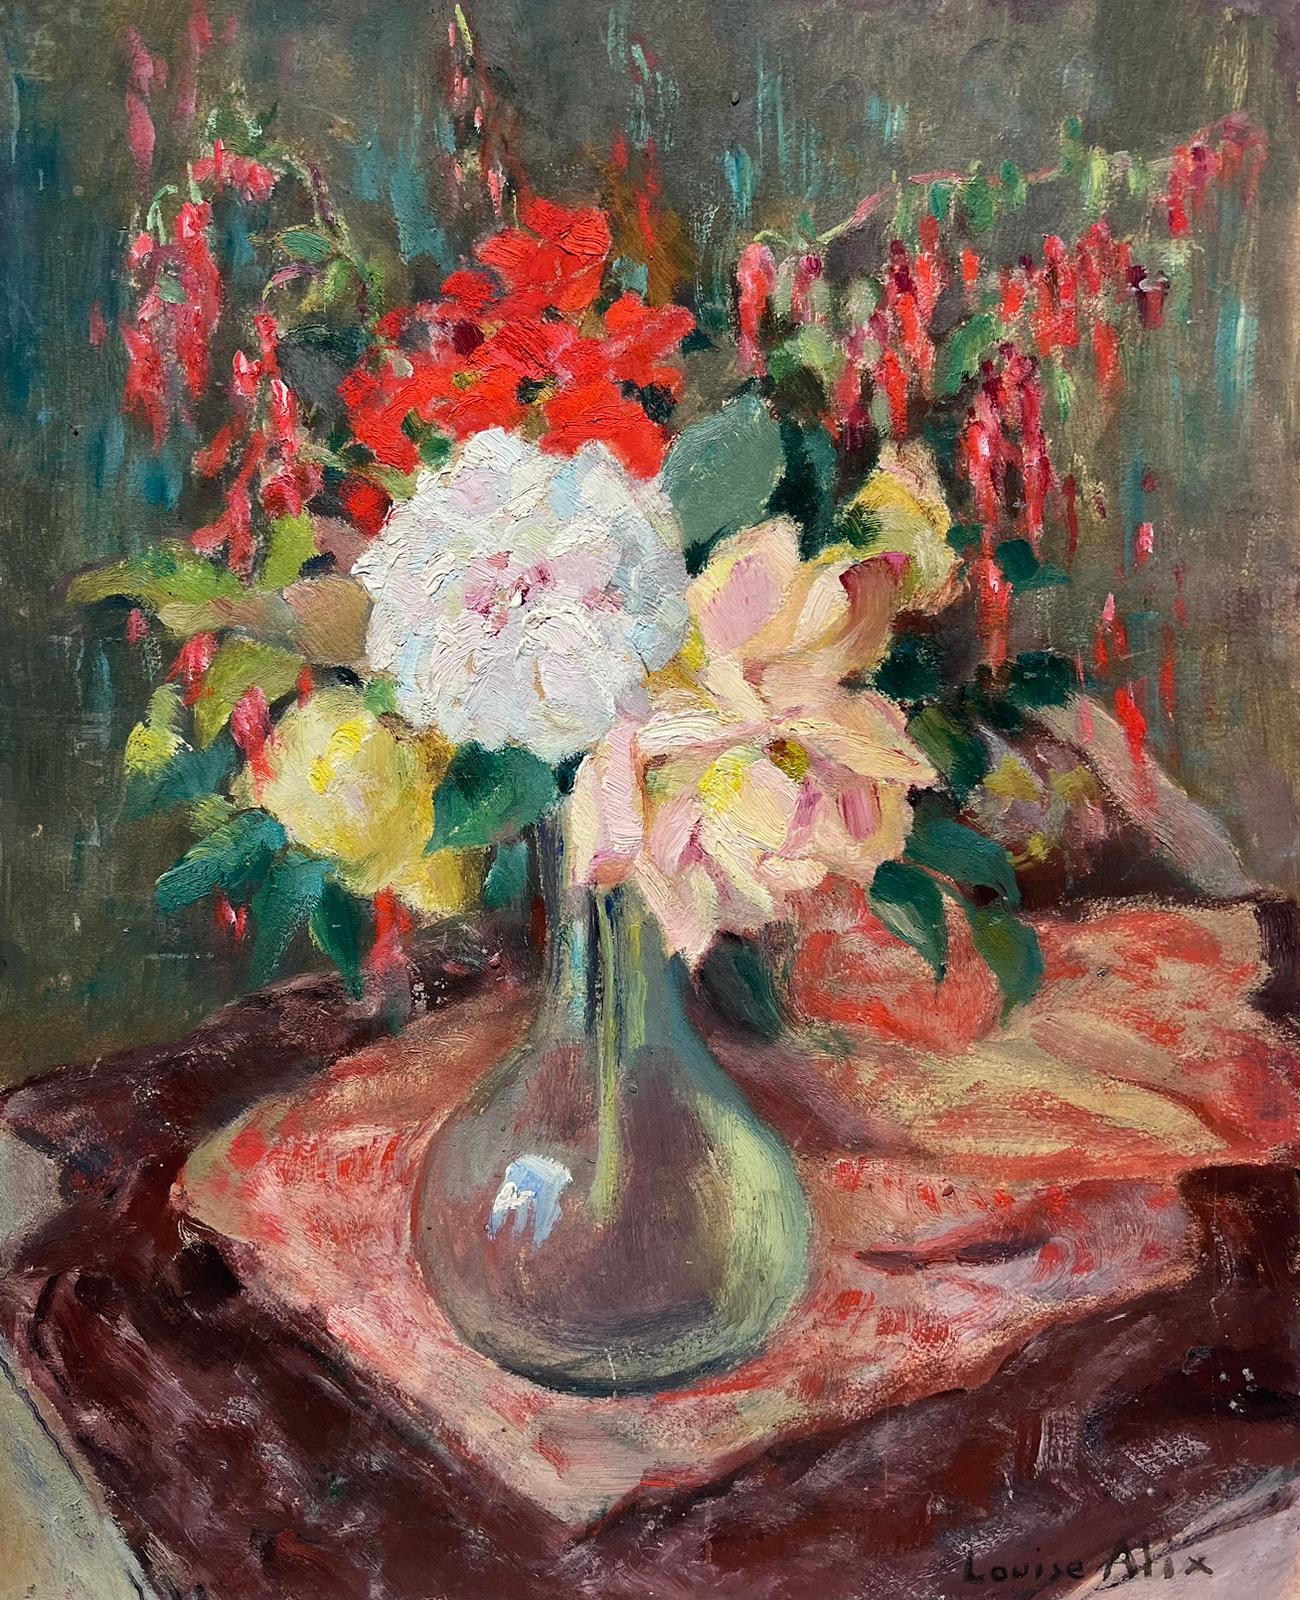 Rosen in Glasvase, Innenszene, französisches impressionistisches Ölgemälde, 1940er Jahre  – Painting von Louise Alix